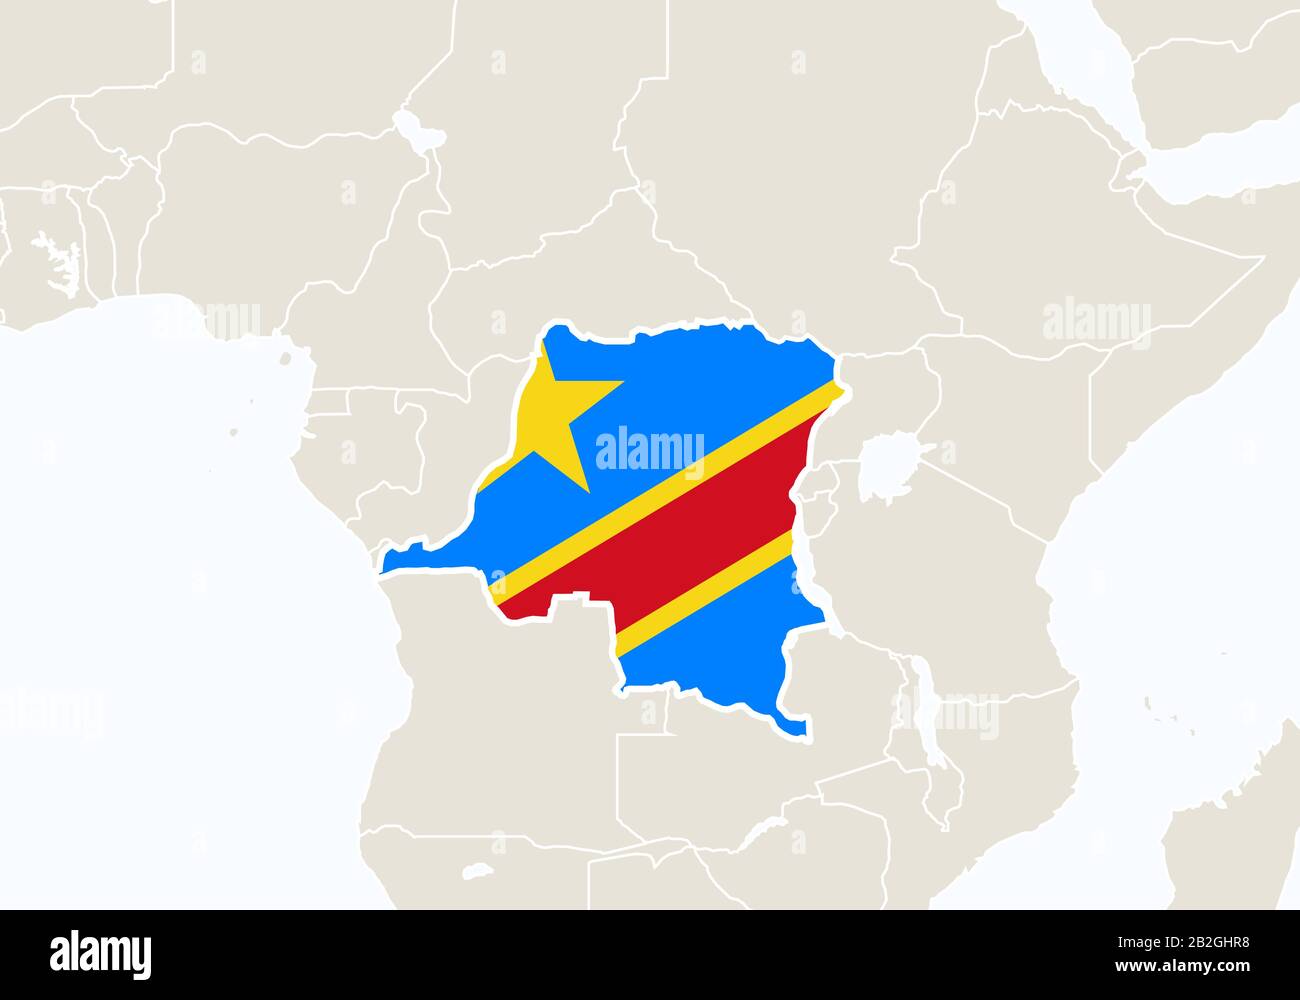 L'Afrique avec la carte de la République démocratique du Congo mise en évidence. Illustration Vectorielle. Illustration de Vecteur